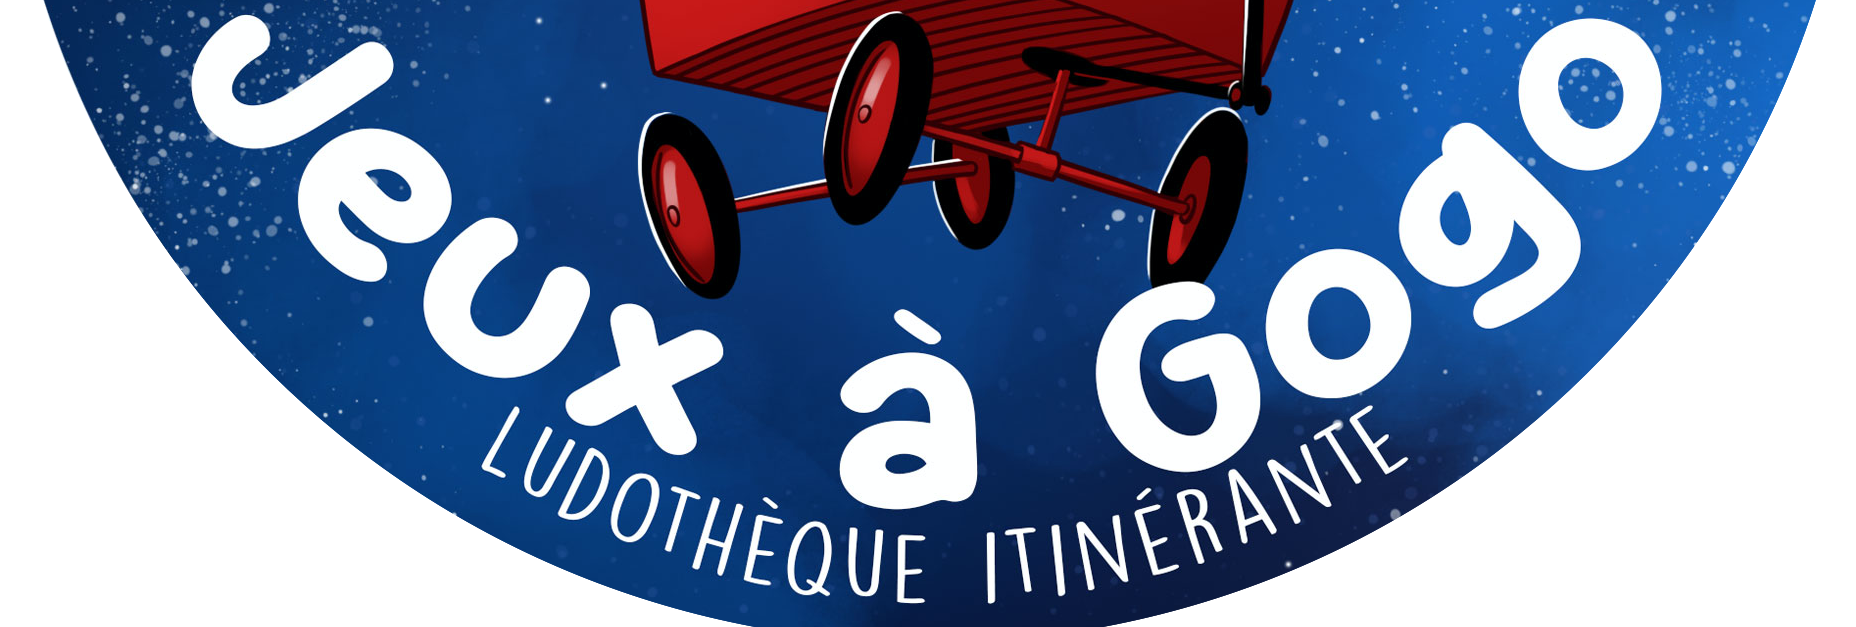 Chabyrinthe (Edition Cocktail Games) – Jeux à Gogo – Ludothèque Itinérante